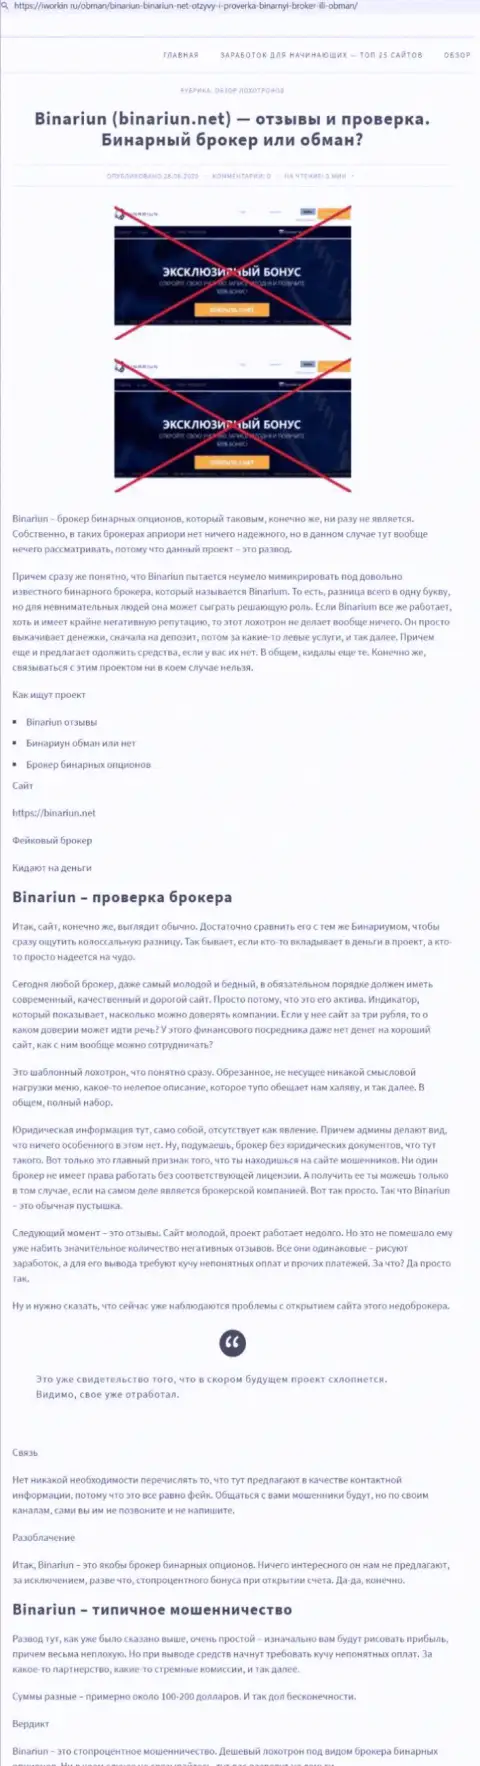 Binariun Net - это ВОРЮГИ !!! Принципы работы КИДАЛОВА (обзор)